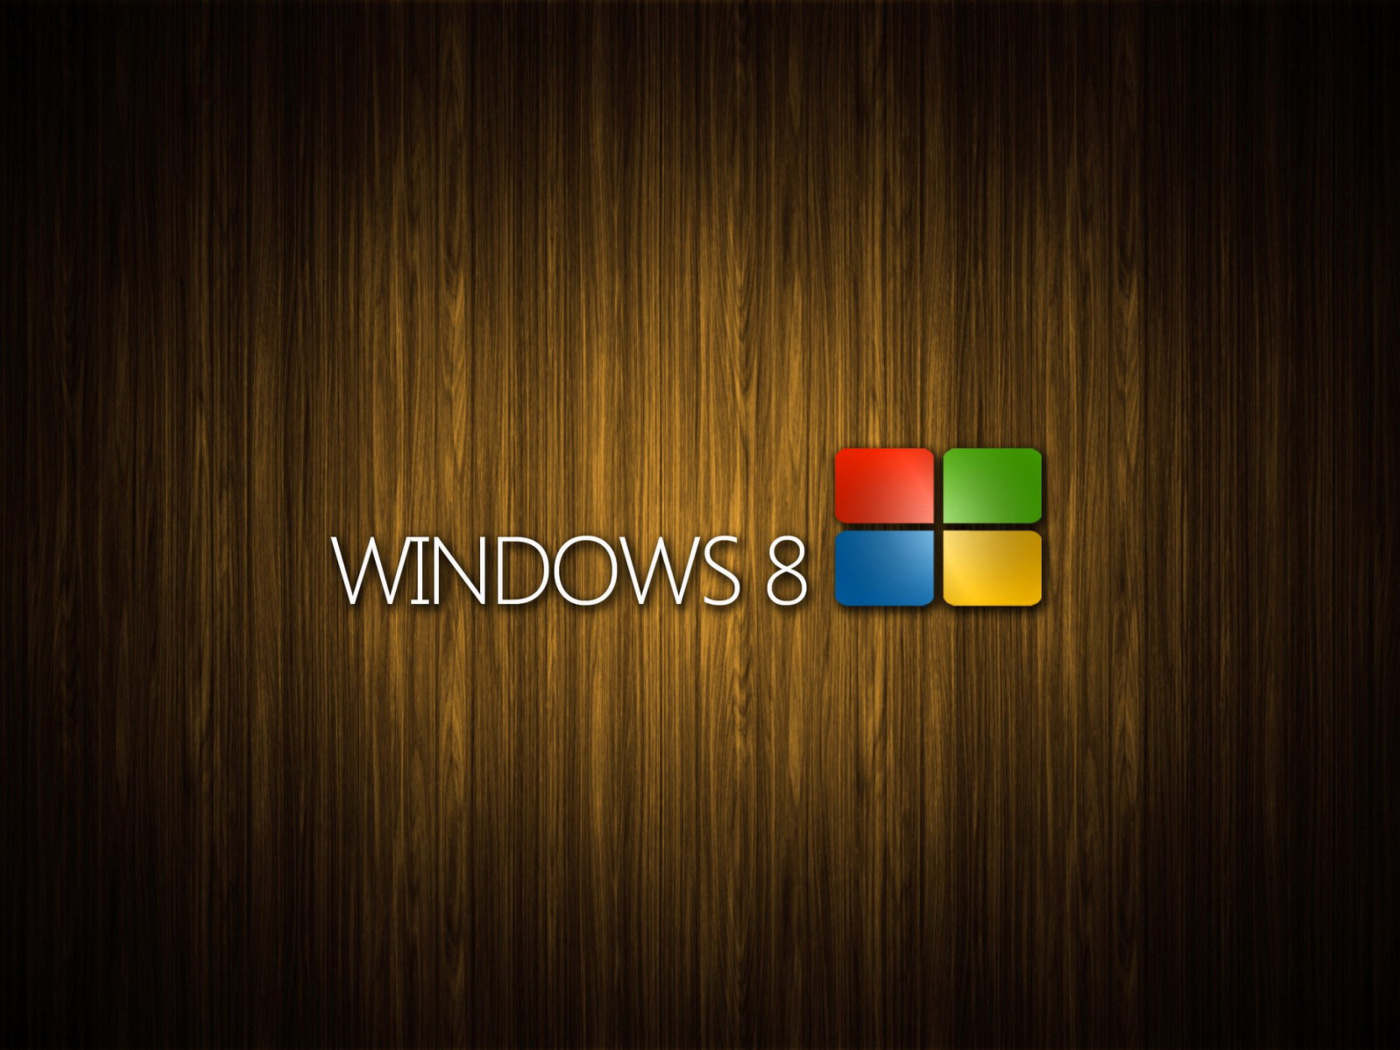 Windows 8 Wooden Emblem screenshot #1 1400x1050